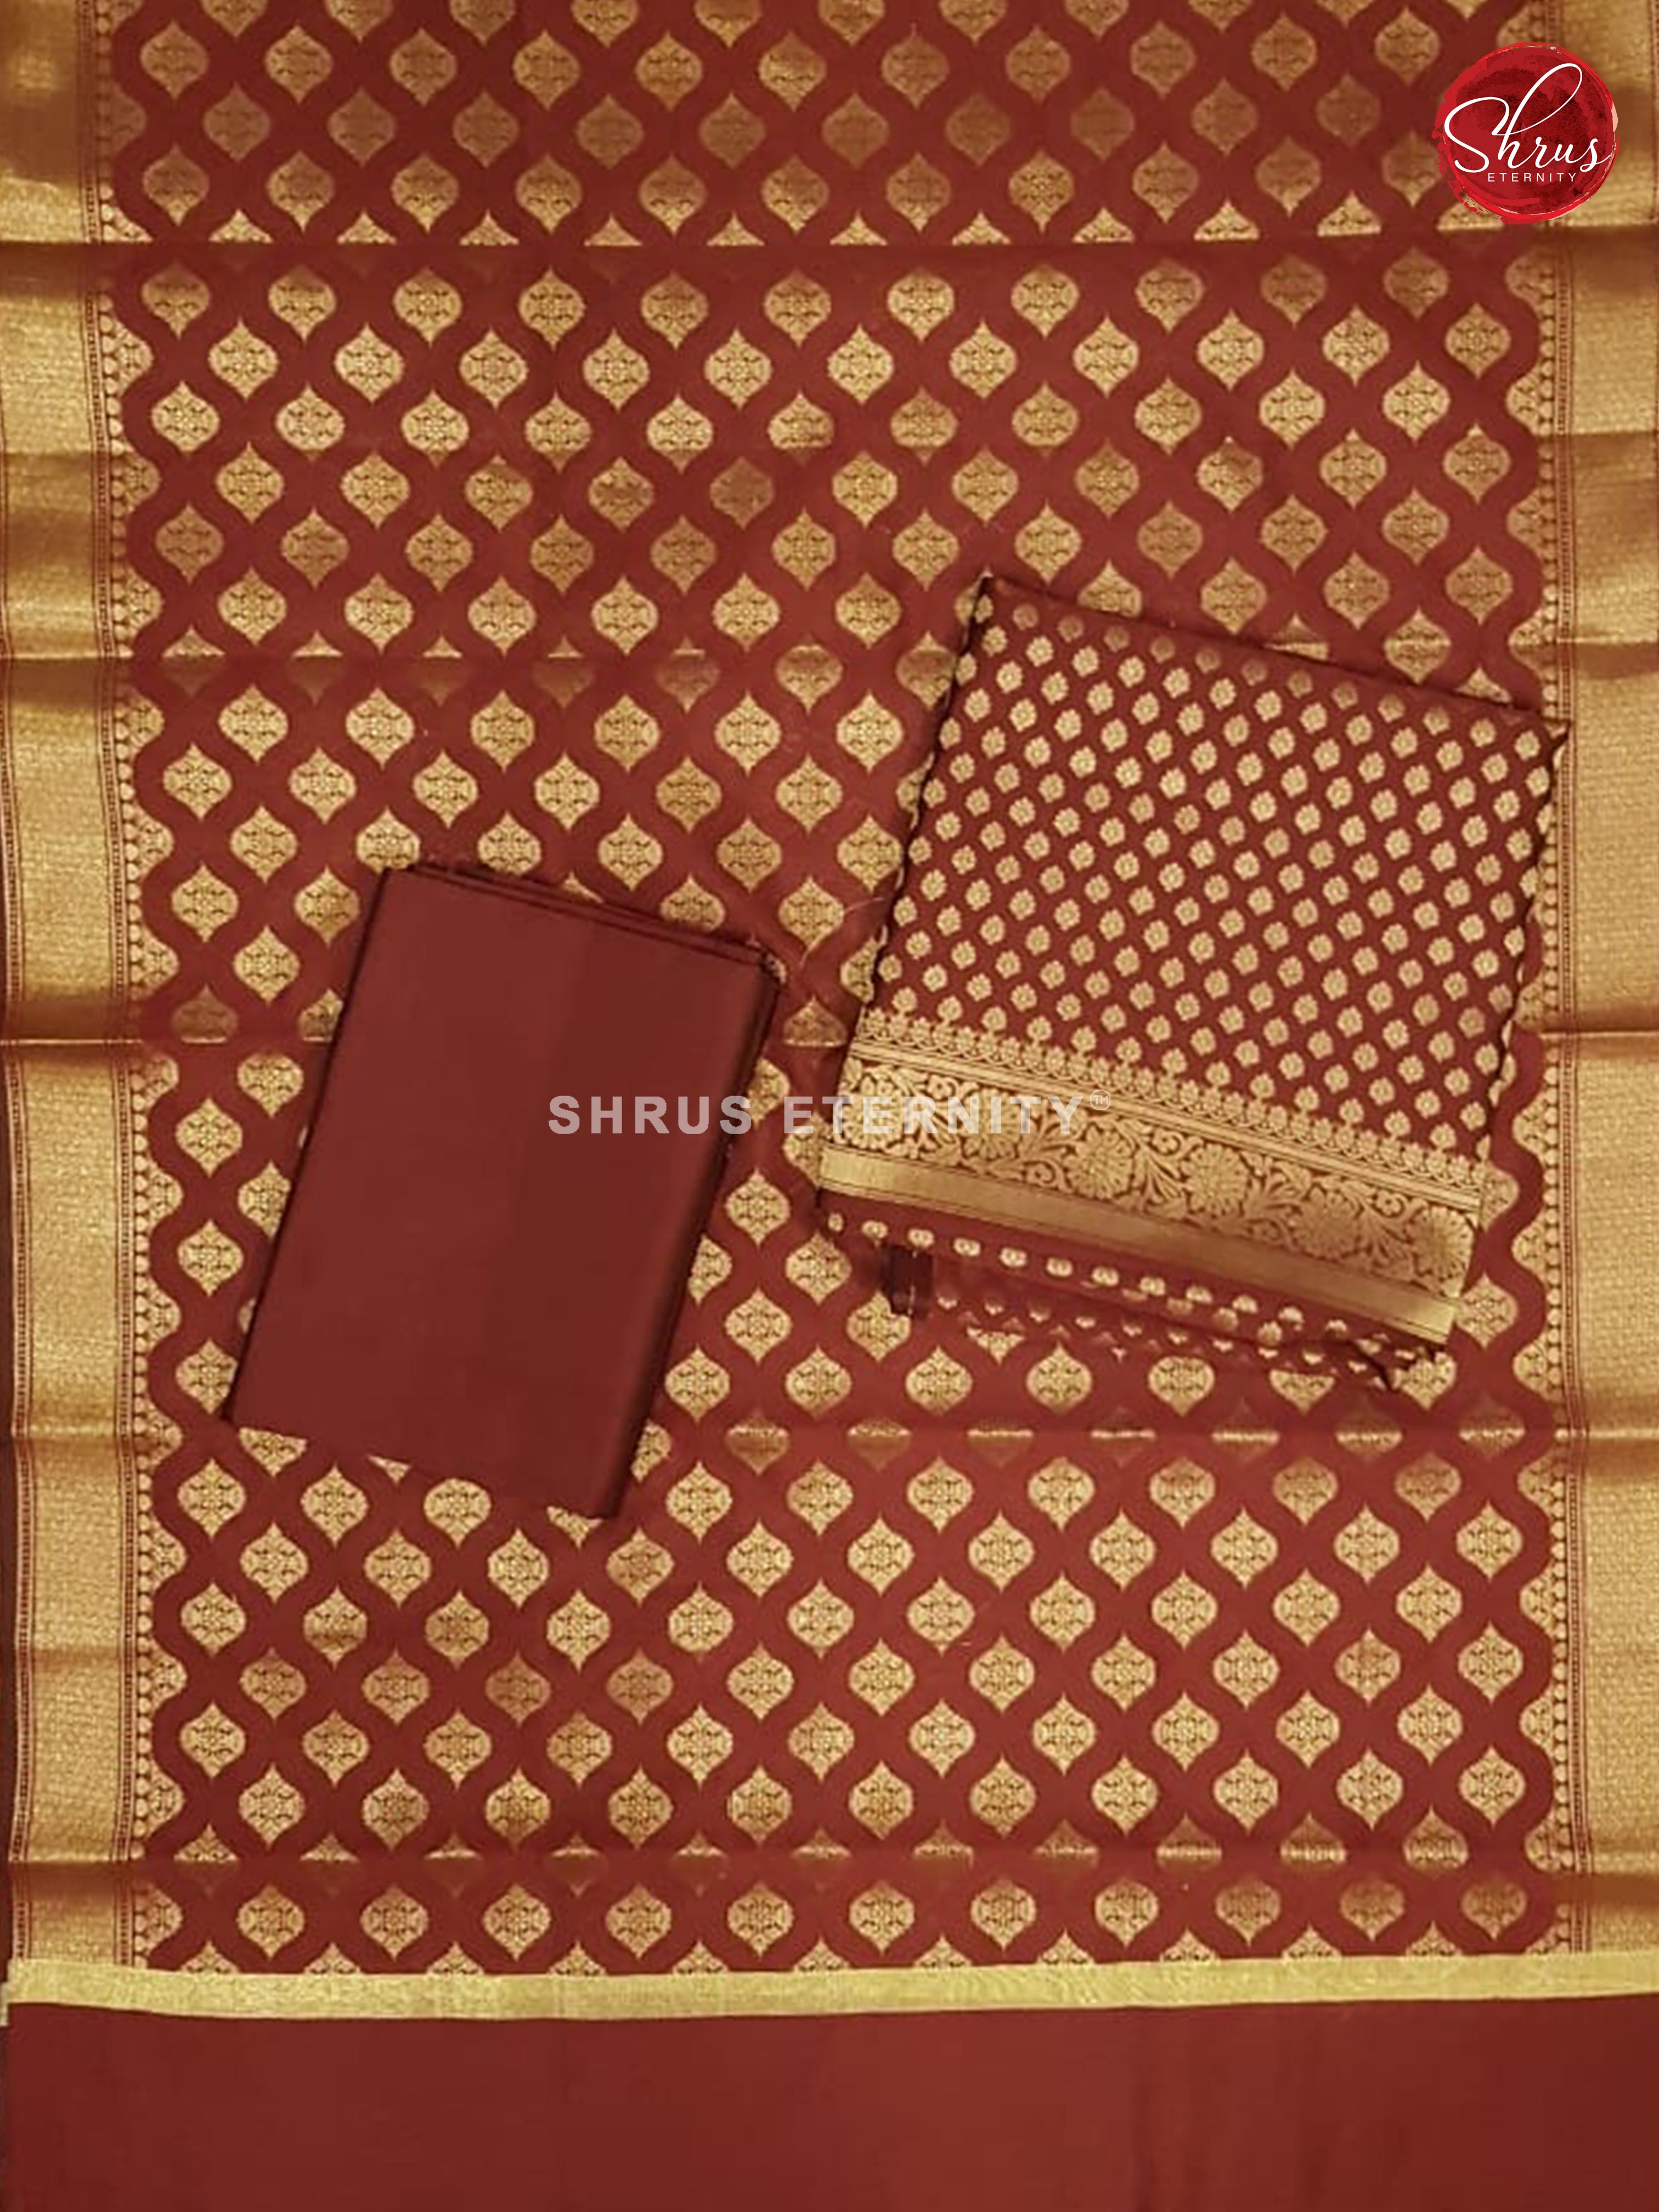 Marooon(Single Tone) - Semi Banarasi  Suit - Shop on ShrusEternity.com